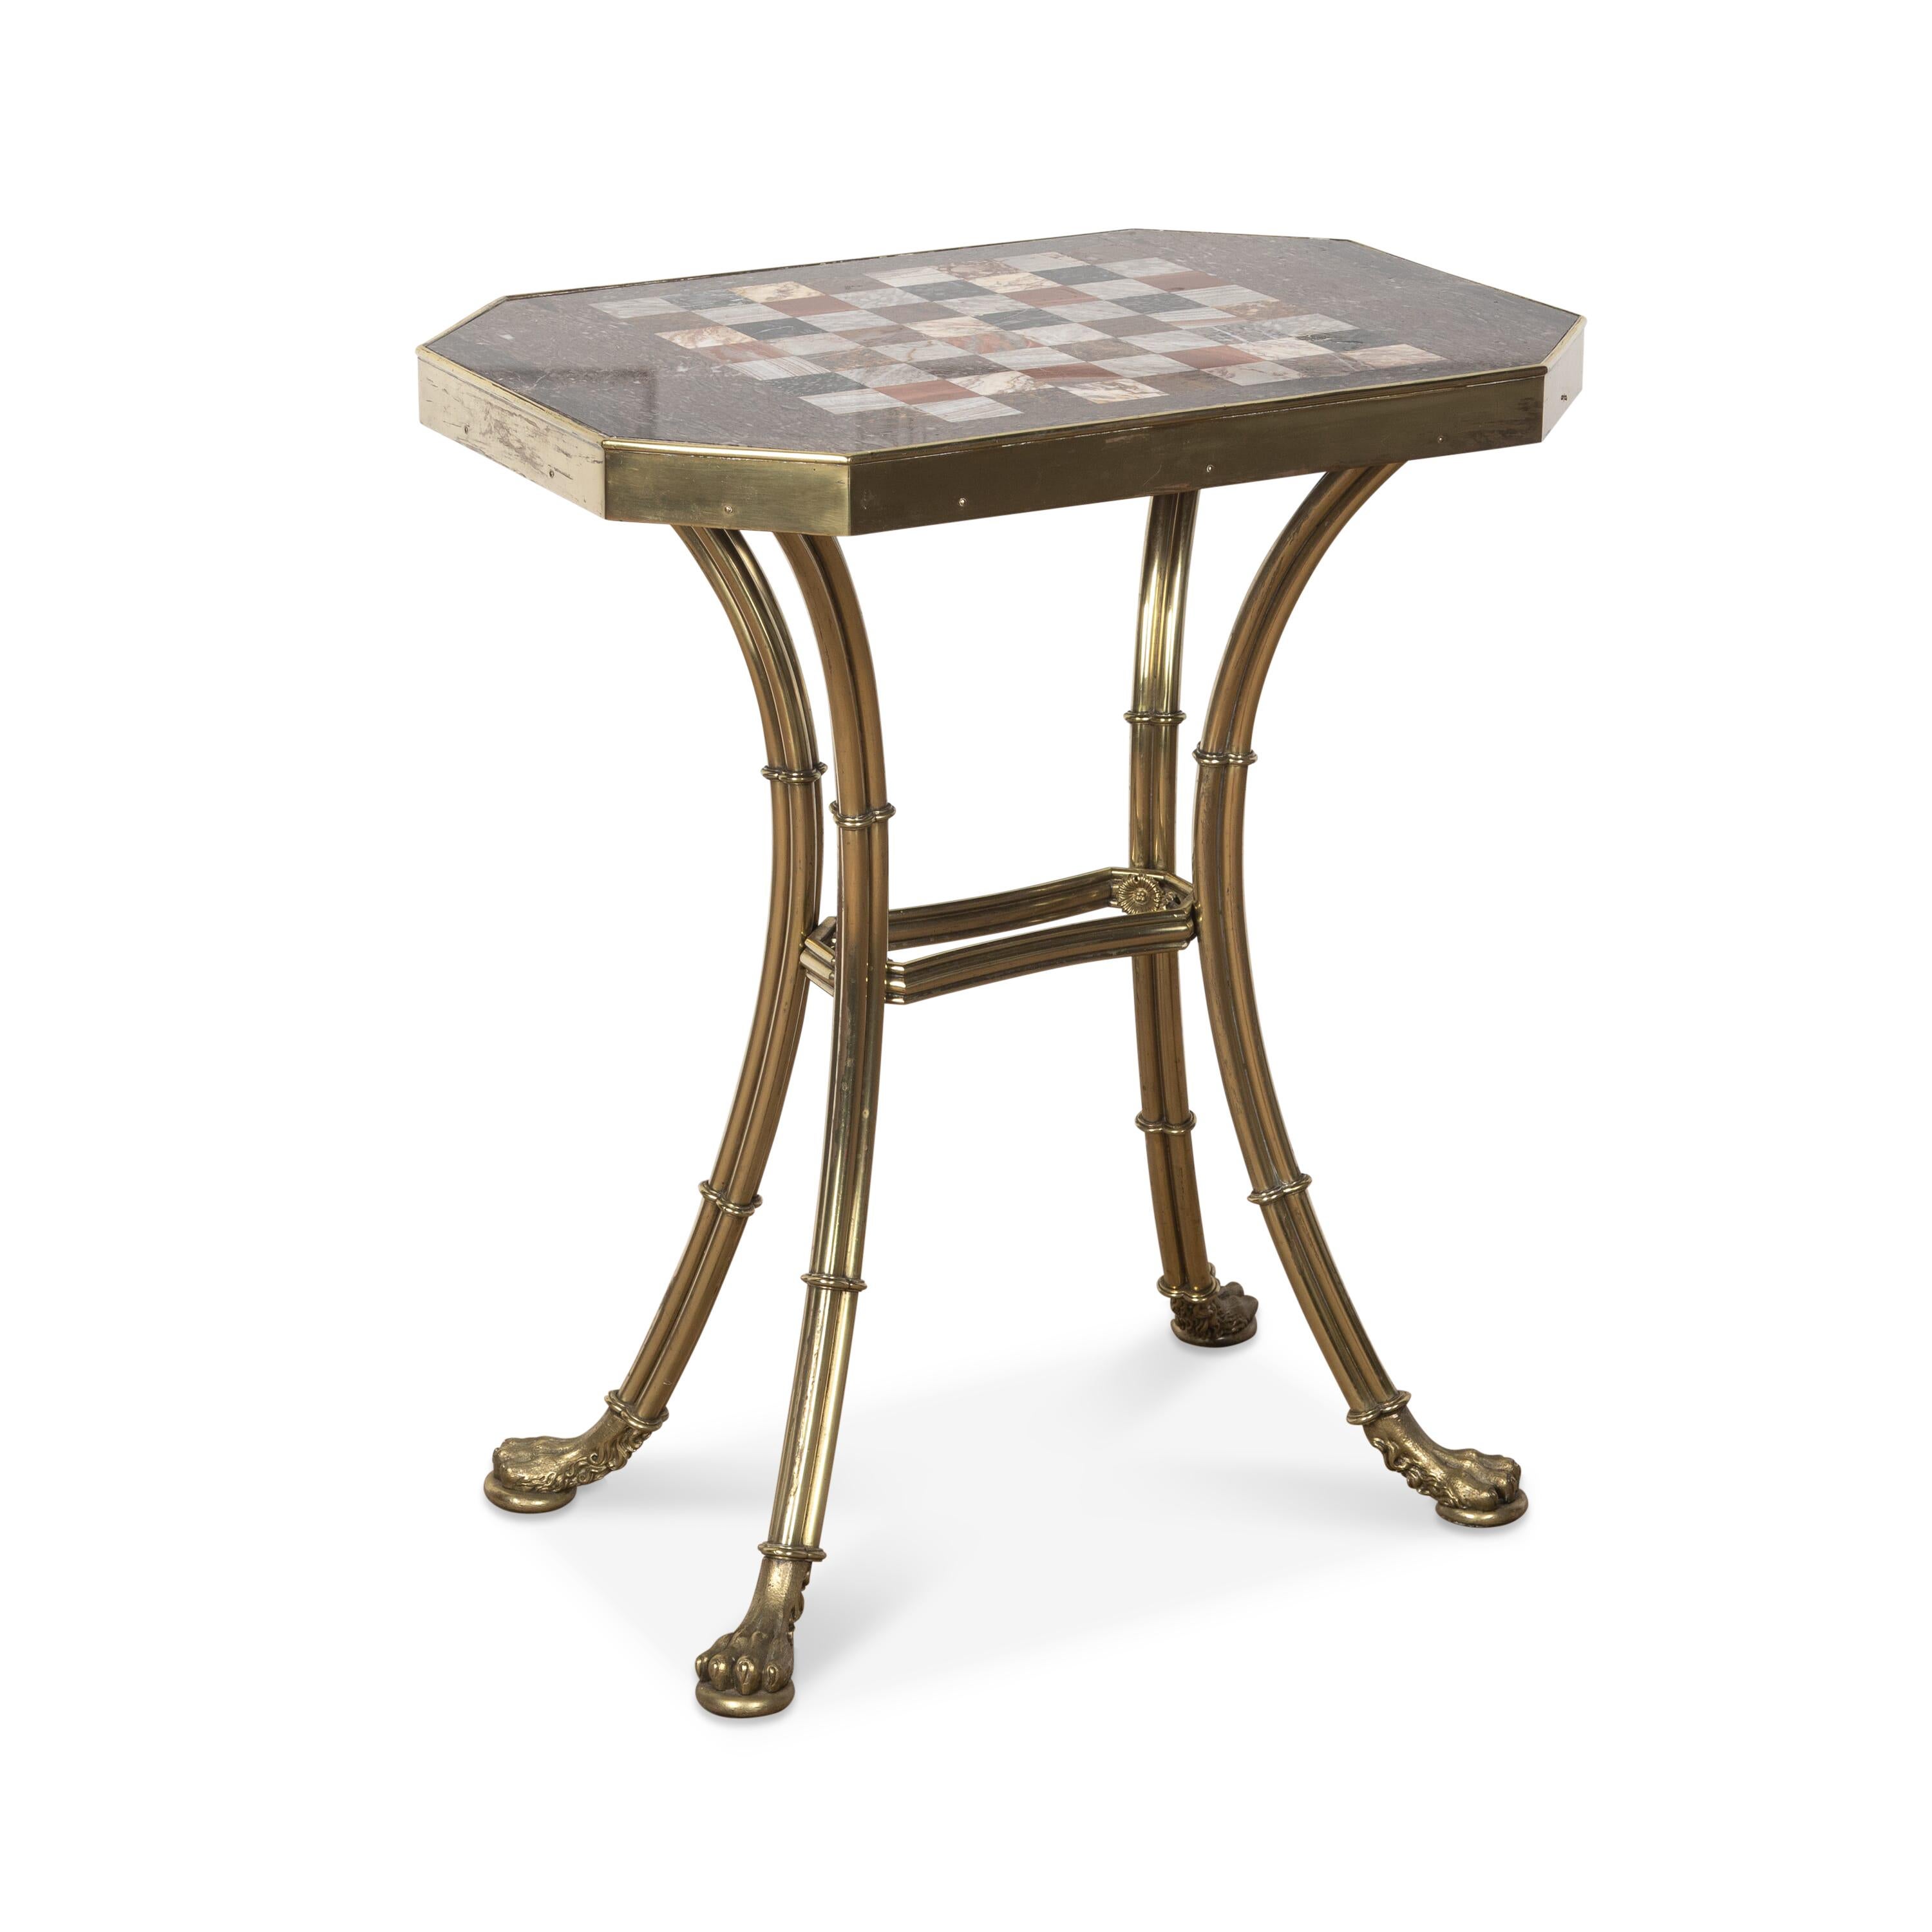 Une fantastique table d'échecs de style Régence, le rare plateau en marbre Devonshire avec un échiquier incrusté de différents spécimens de marbre, placé dans un cadre et une base en laiton doré, composé de quatre pieds en forme de colonne avec un